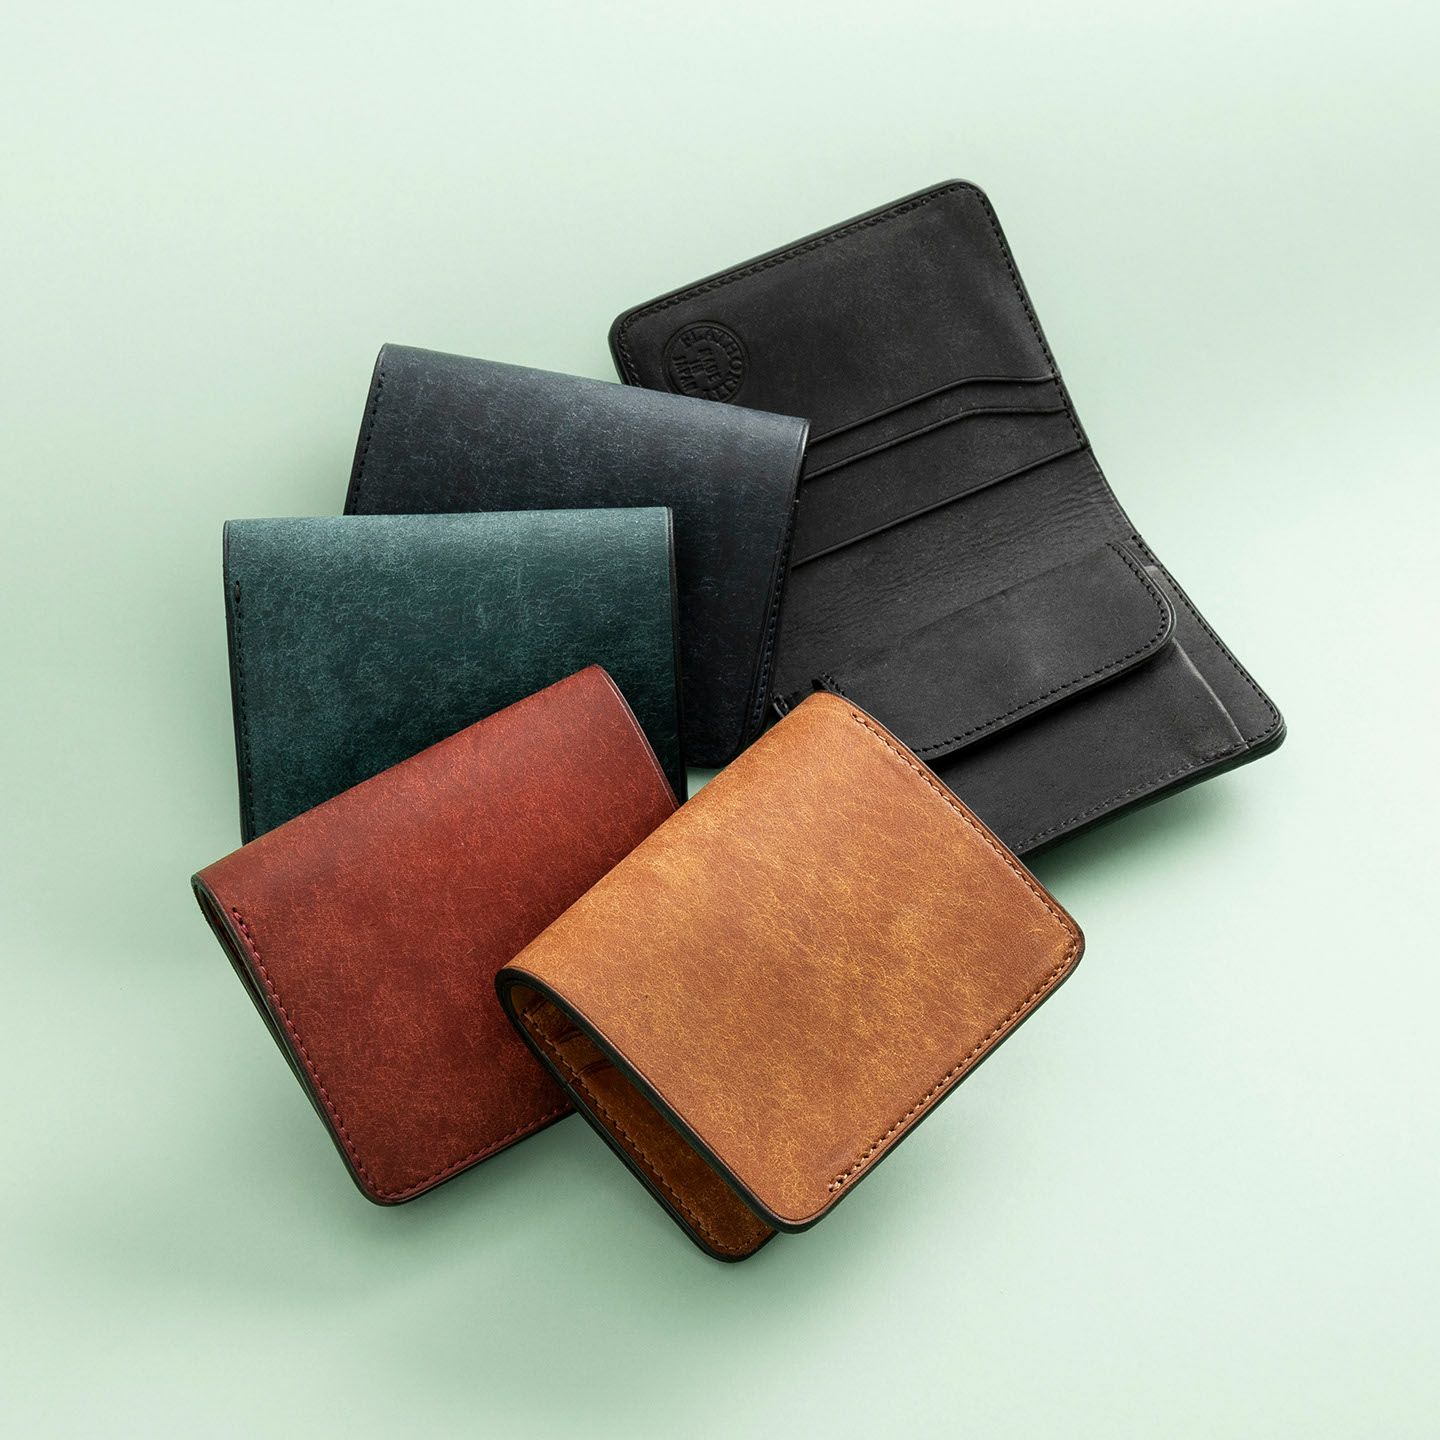 プエブロ ミニウォレット 大人の財布・ ミニ・コンパクト財布 など拘りの日本製ブランドなら Mens Leather Store